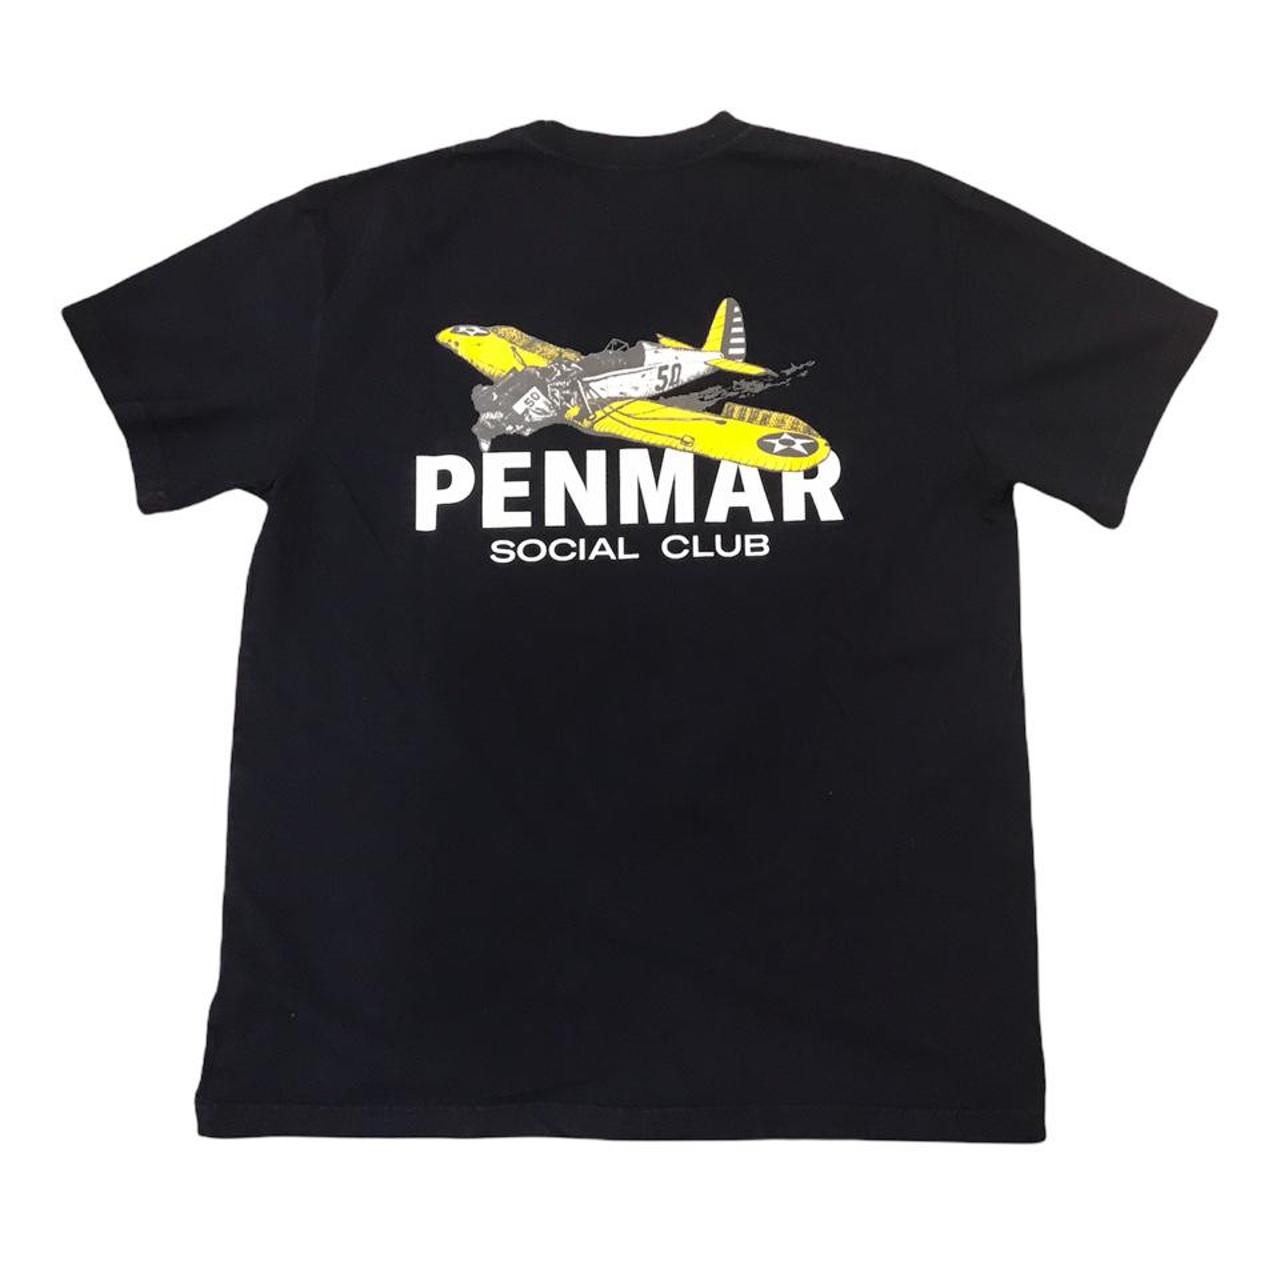 Product Image 1 - Penmar Social Club Shirt 

-